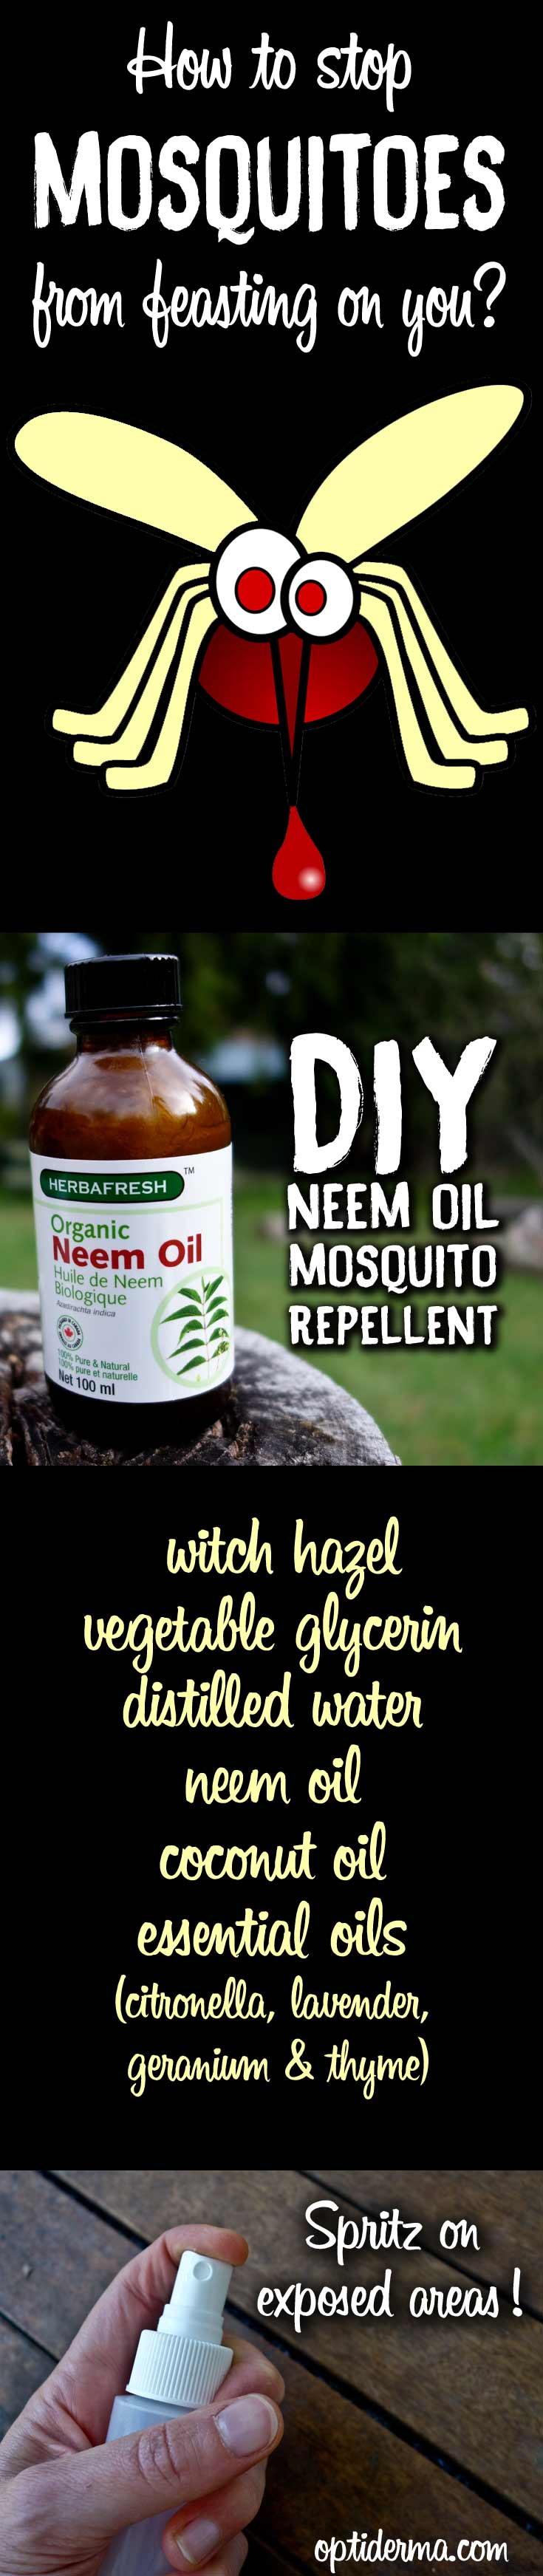 DIY Neem Oil Mosquito Repellent